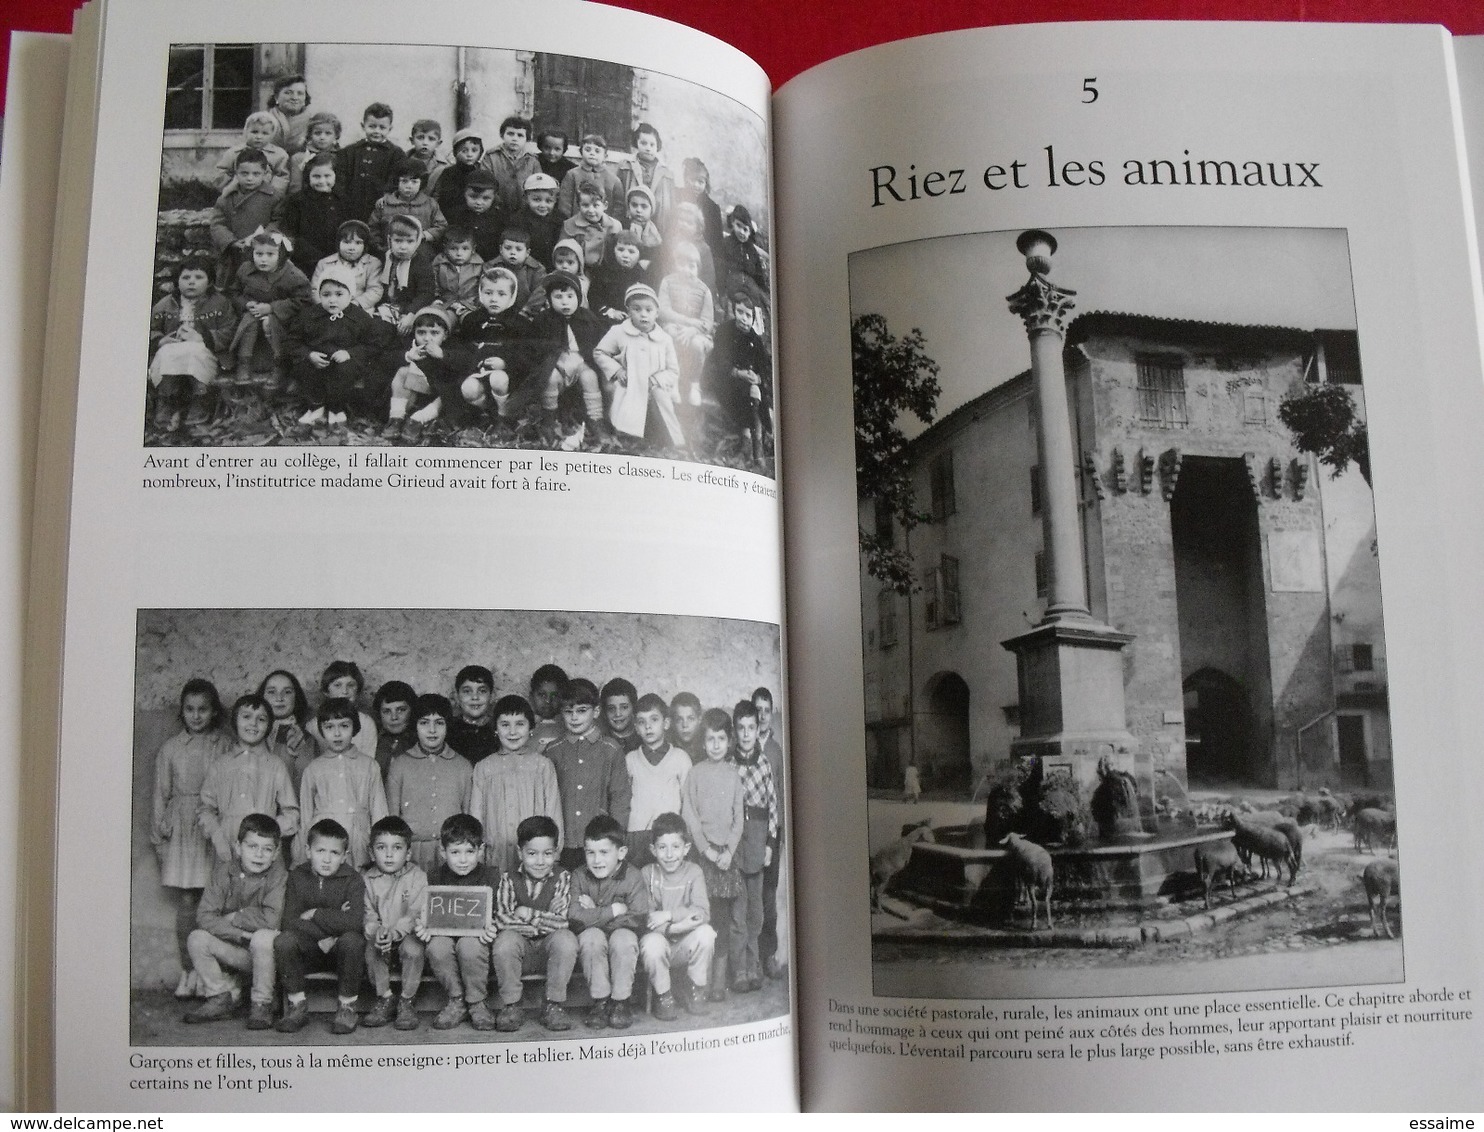 Riez-la Romaine. Alpes provence. Mespoulède. Mémoire en images. éditions Alan Sutton. 2008. cartes postales photos